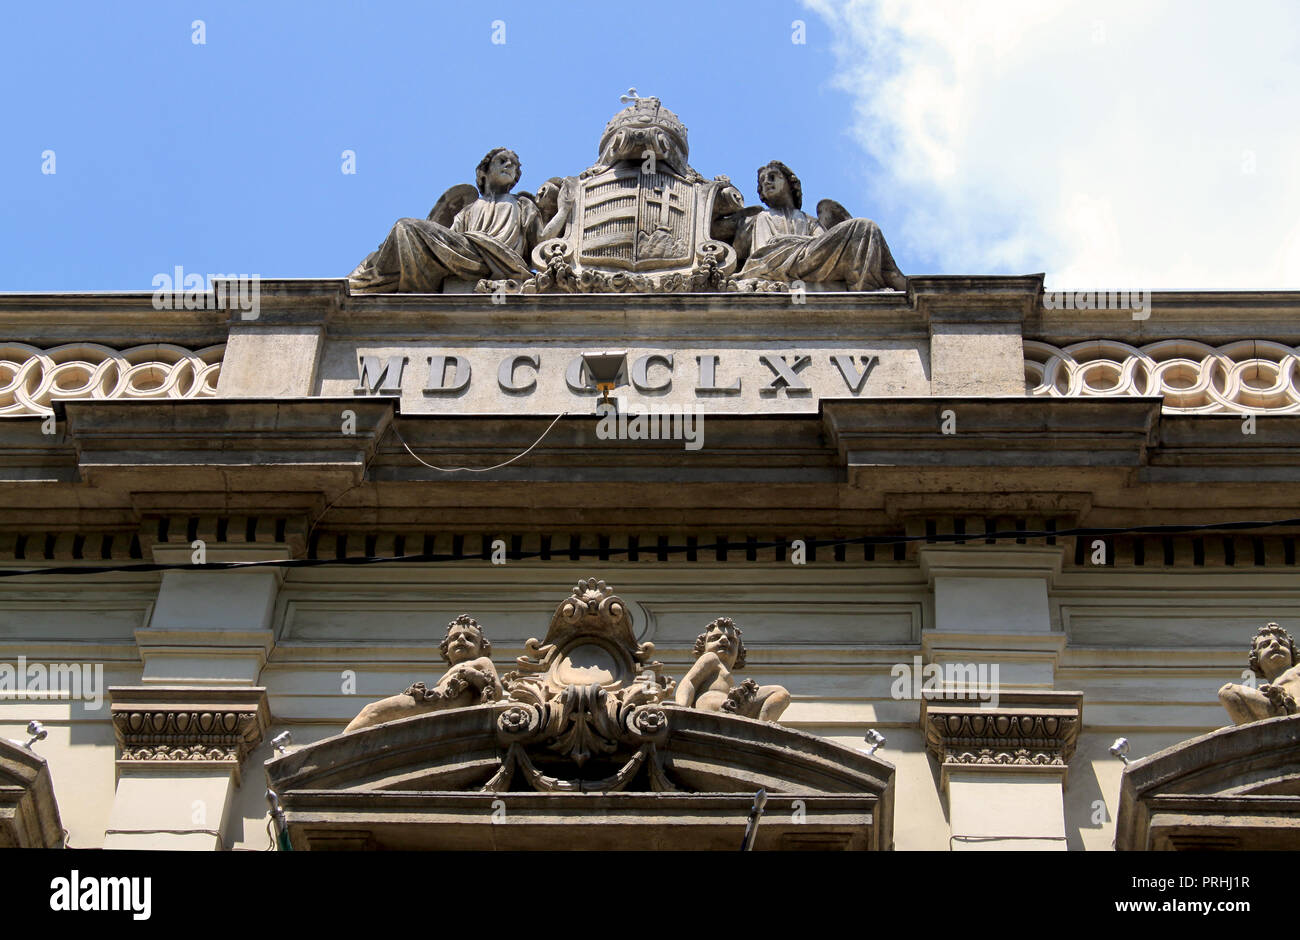 Détail d'un bâtiment historique dans la vieille ville de Budapest, Hongrie, Europe de l'Est. Armoiries, statues et ornements Banque D'Images